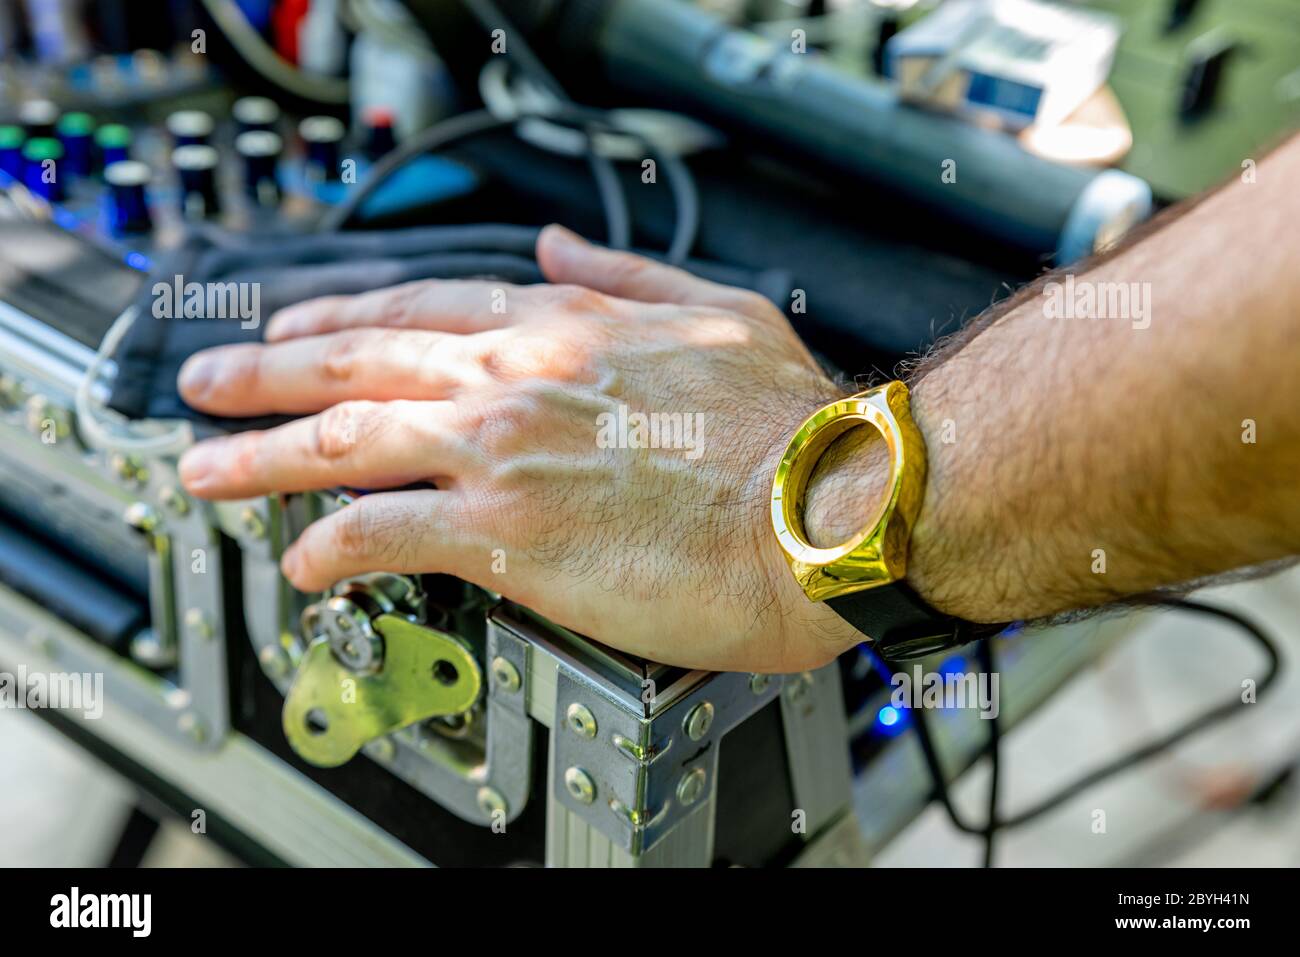 Pontelatone, Italien. Juni 2020. Hand und Arm eines Mannes in der Nähe einer DJ-Konsole und mit einer Uhr ohne Zifferblatt. Stockfoto